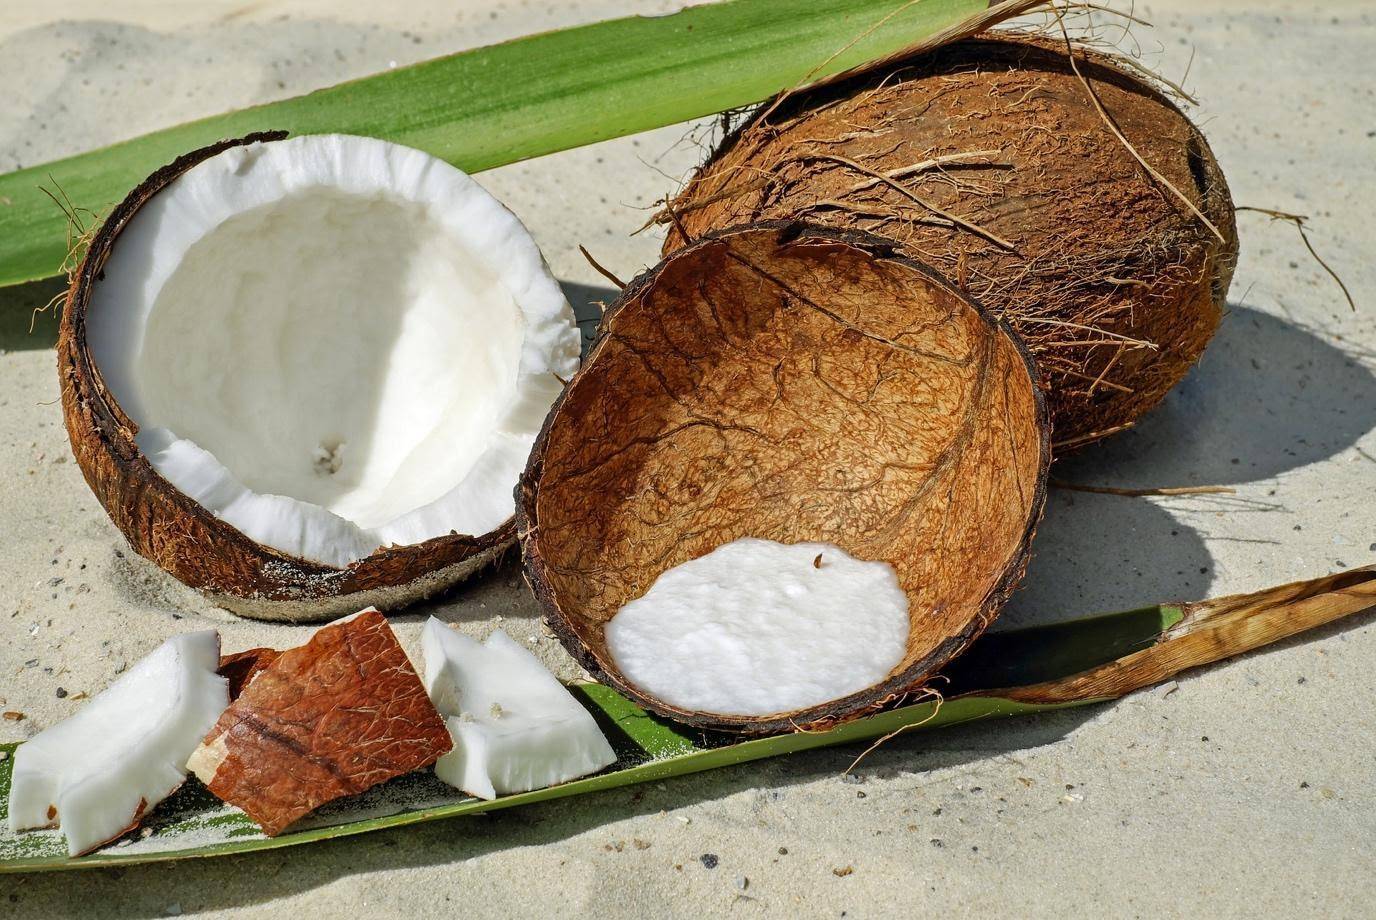 Кокосовый орех или кокос: полезен или вреден? калорийность, польза и вред кокоса, и его влияние на здоровье детей и взрослых - автор екатерина данилова - журнал женское мнение